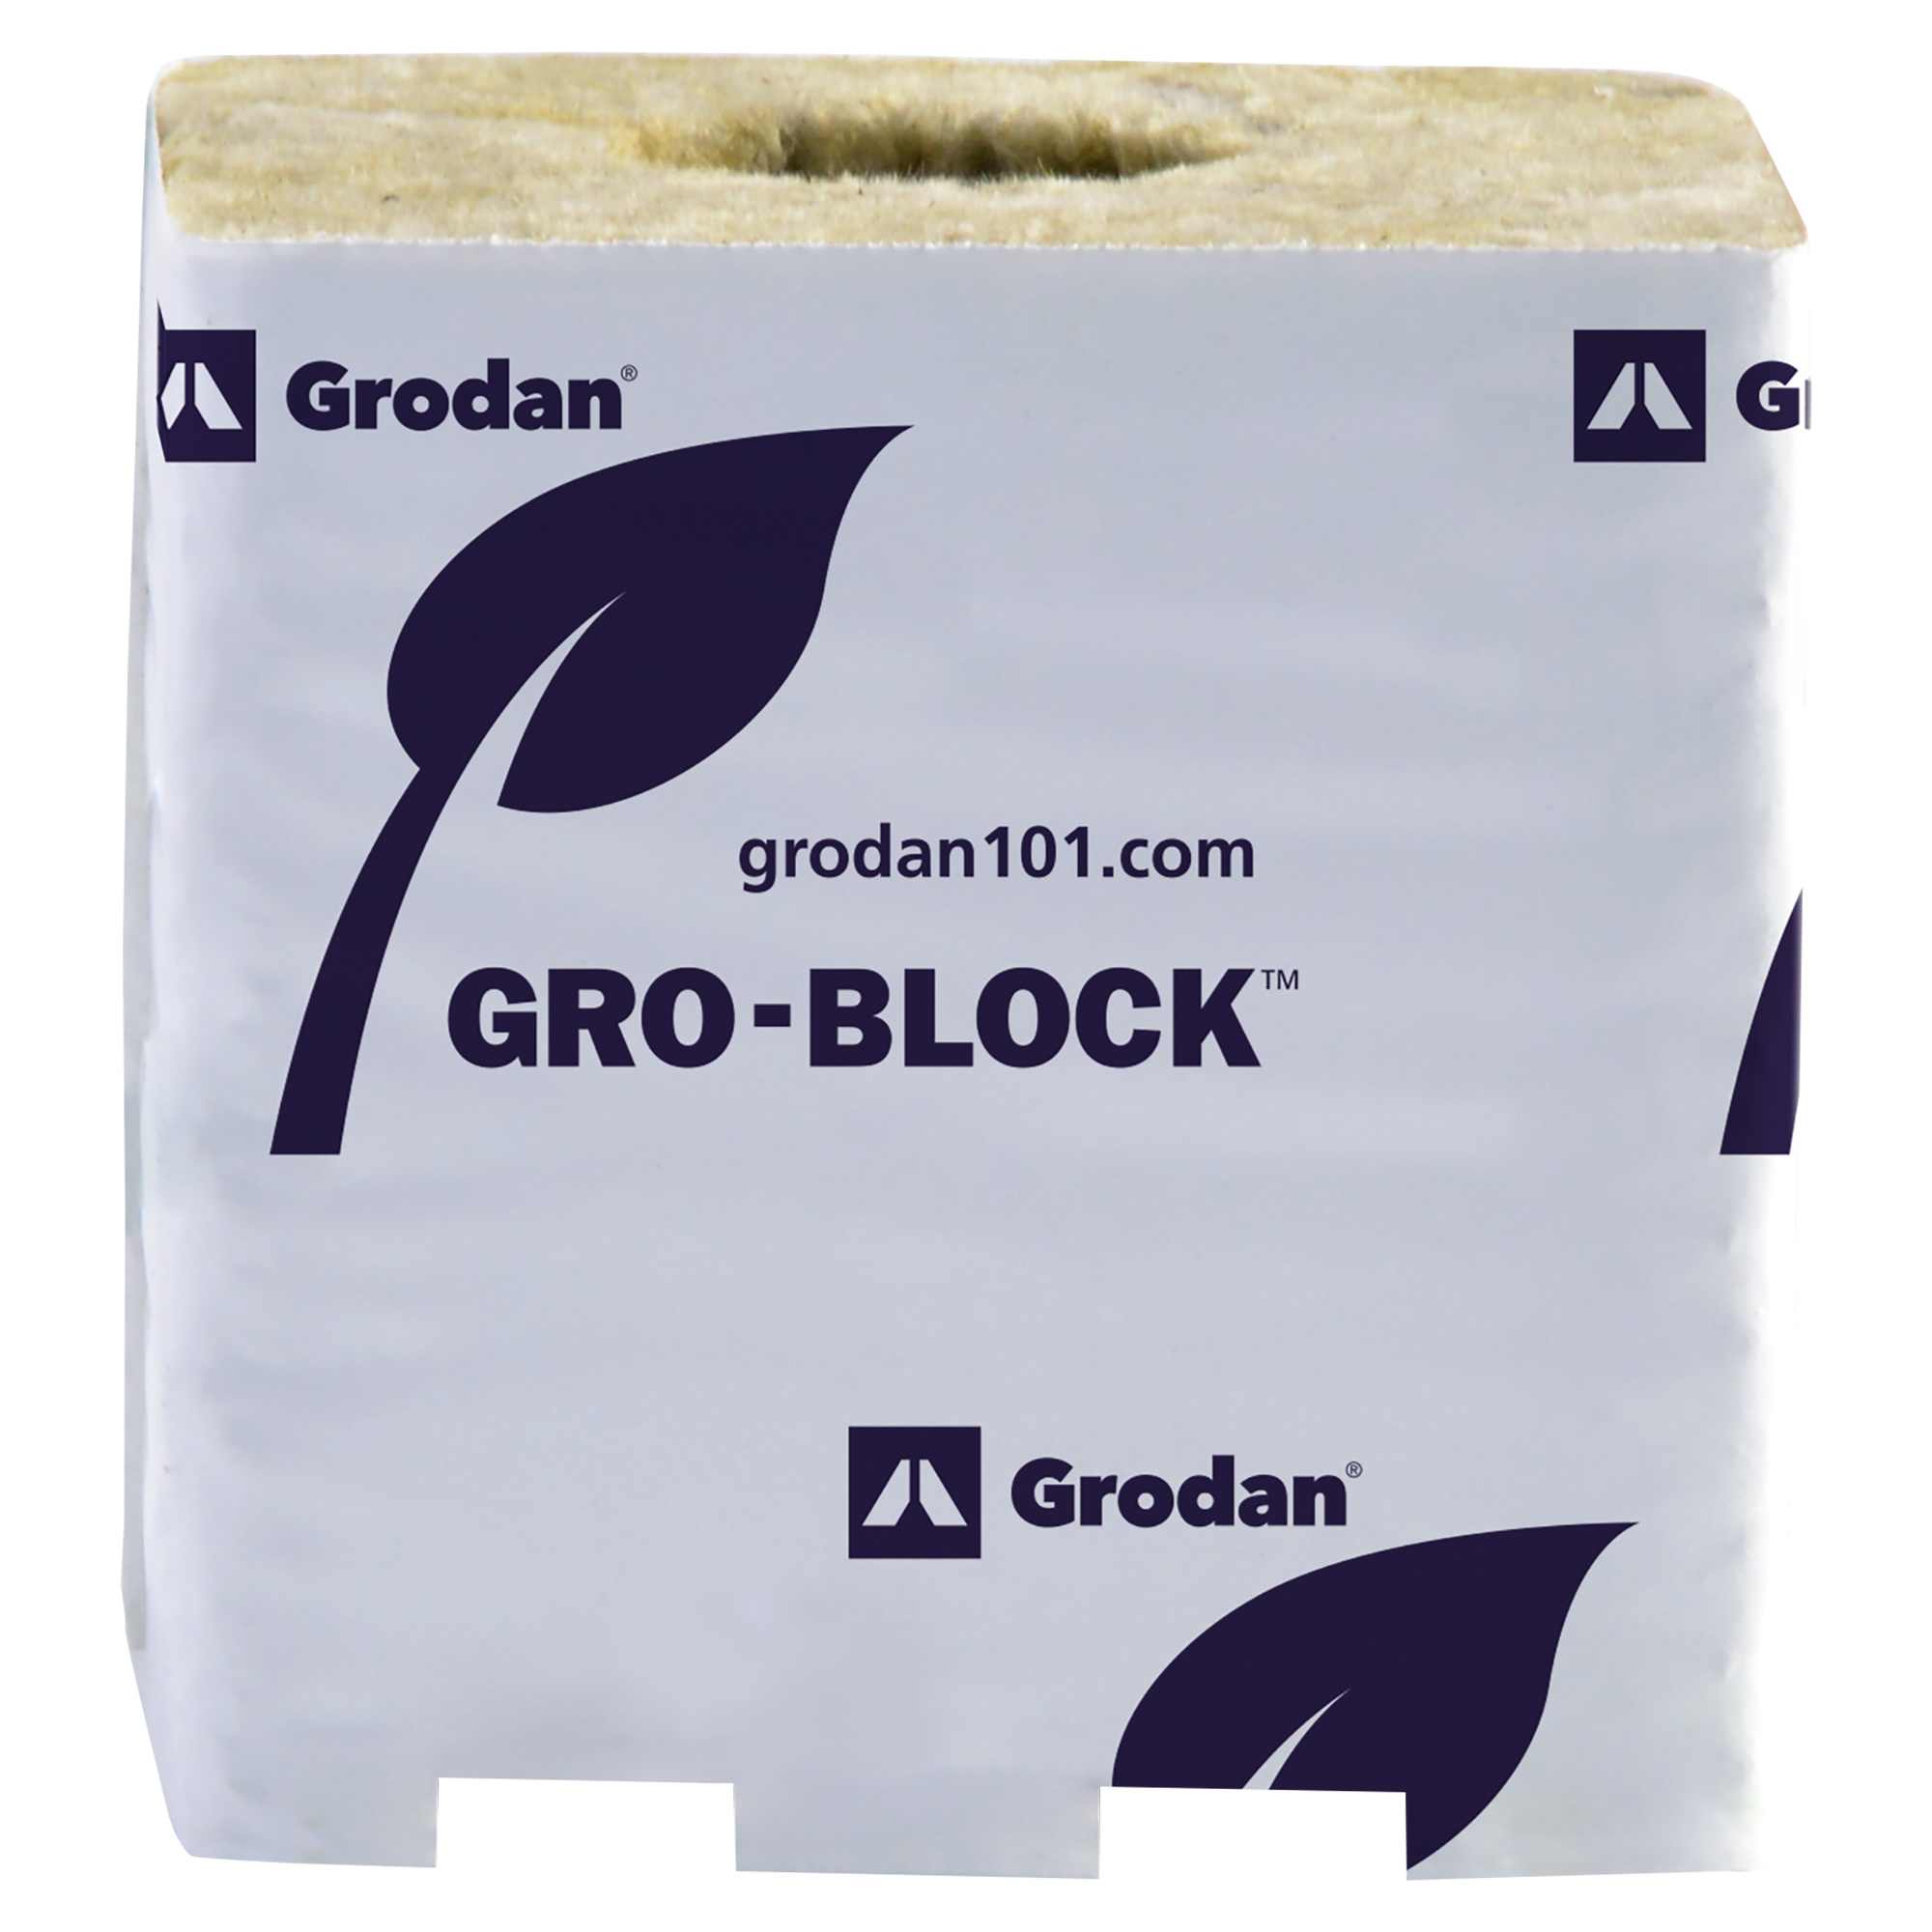 Grodan Grodan - Gro-Block Improved GR10 Large w/Hole 4" x 4" x 4"